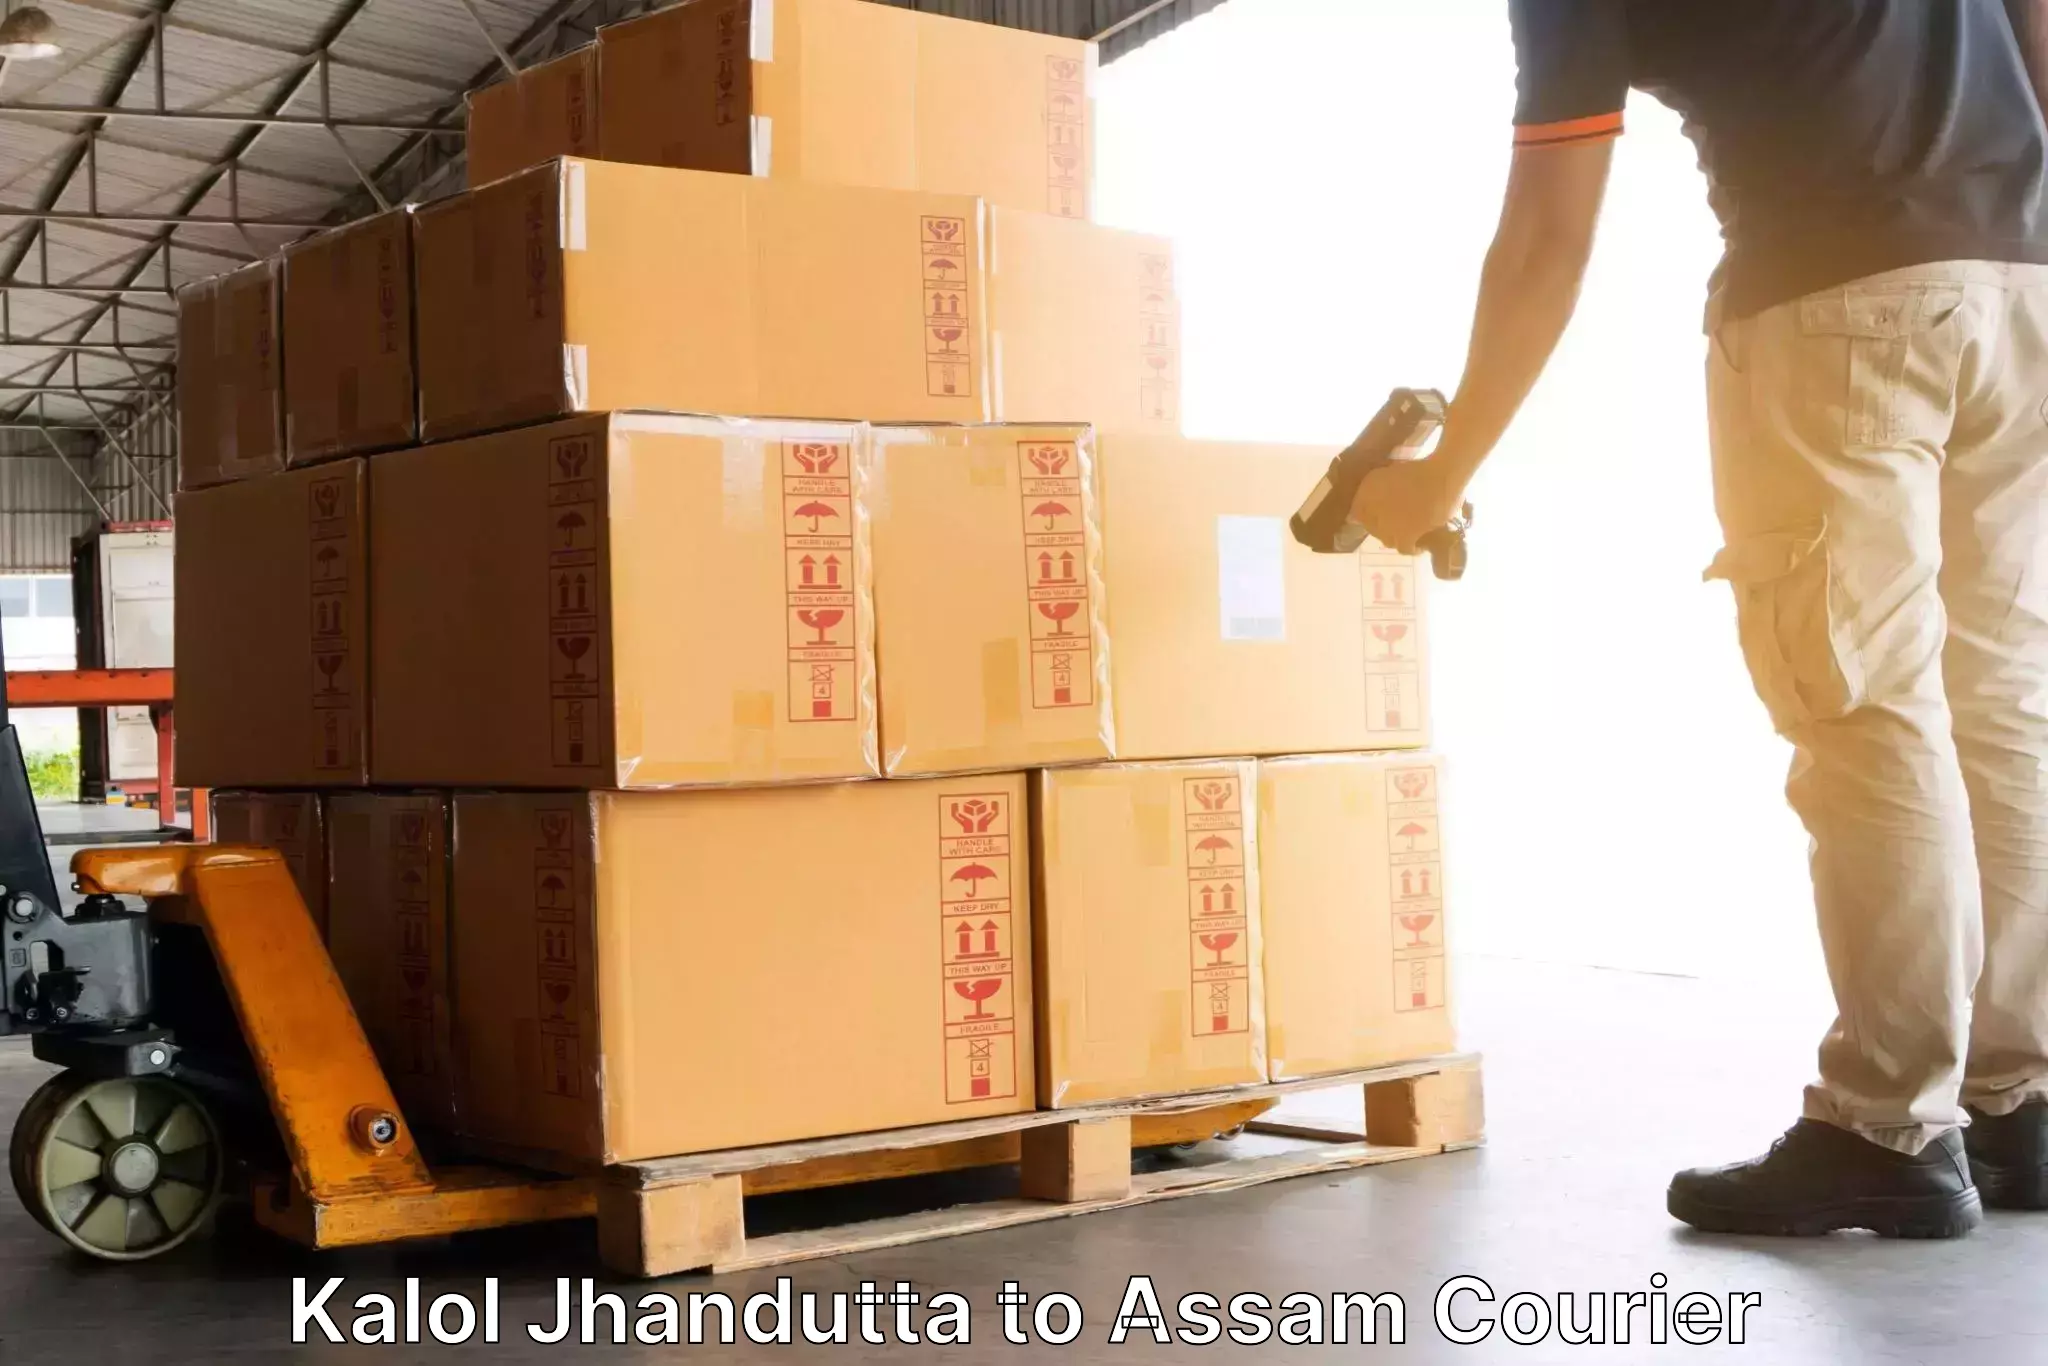 Efficient shipping operations Kalol Jhandutta to Assam